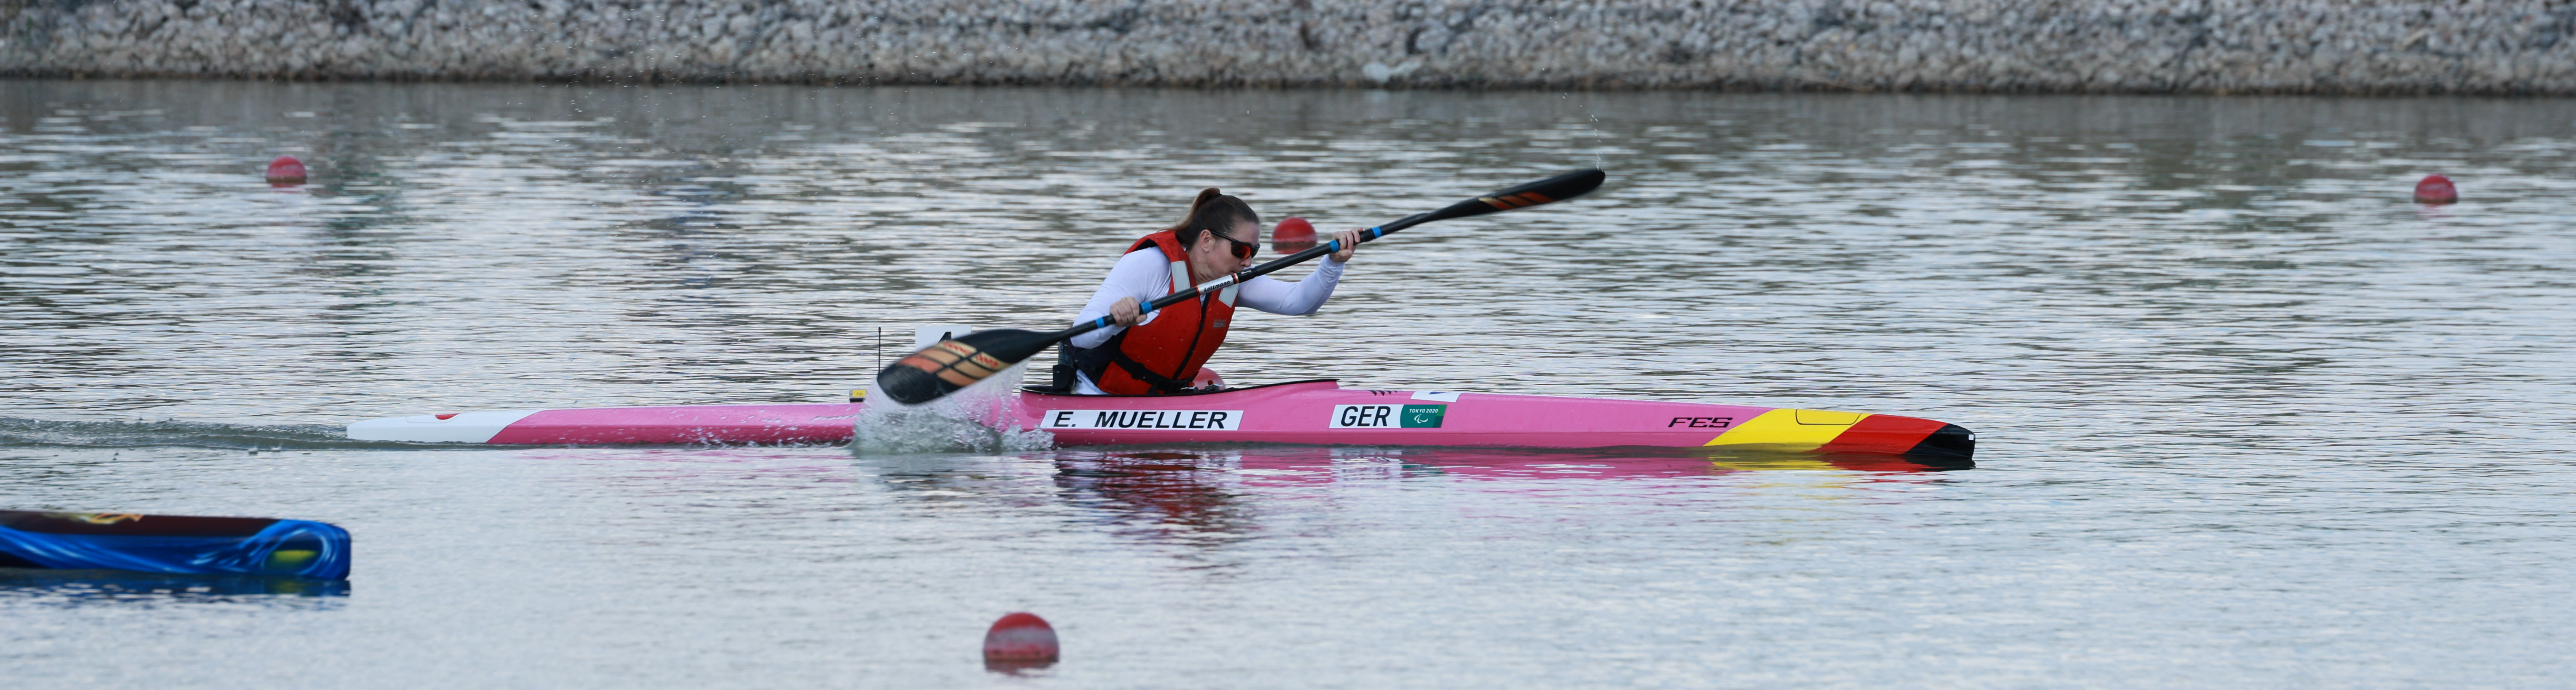 Para-Kanutin Edina Müller in ihrem rosafarbenen Kanu bei voller Fahrt. Sie trägt eine Sonnenbrille und das rote Trikot der Nationalmannschaft.